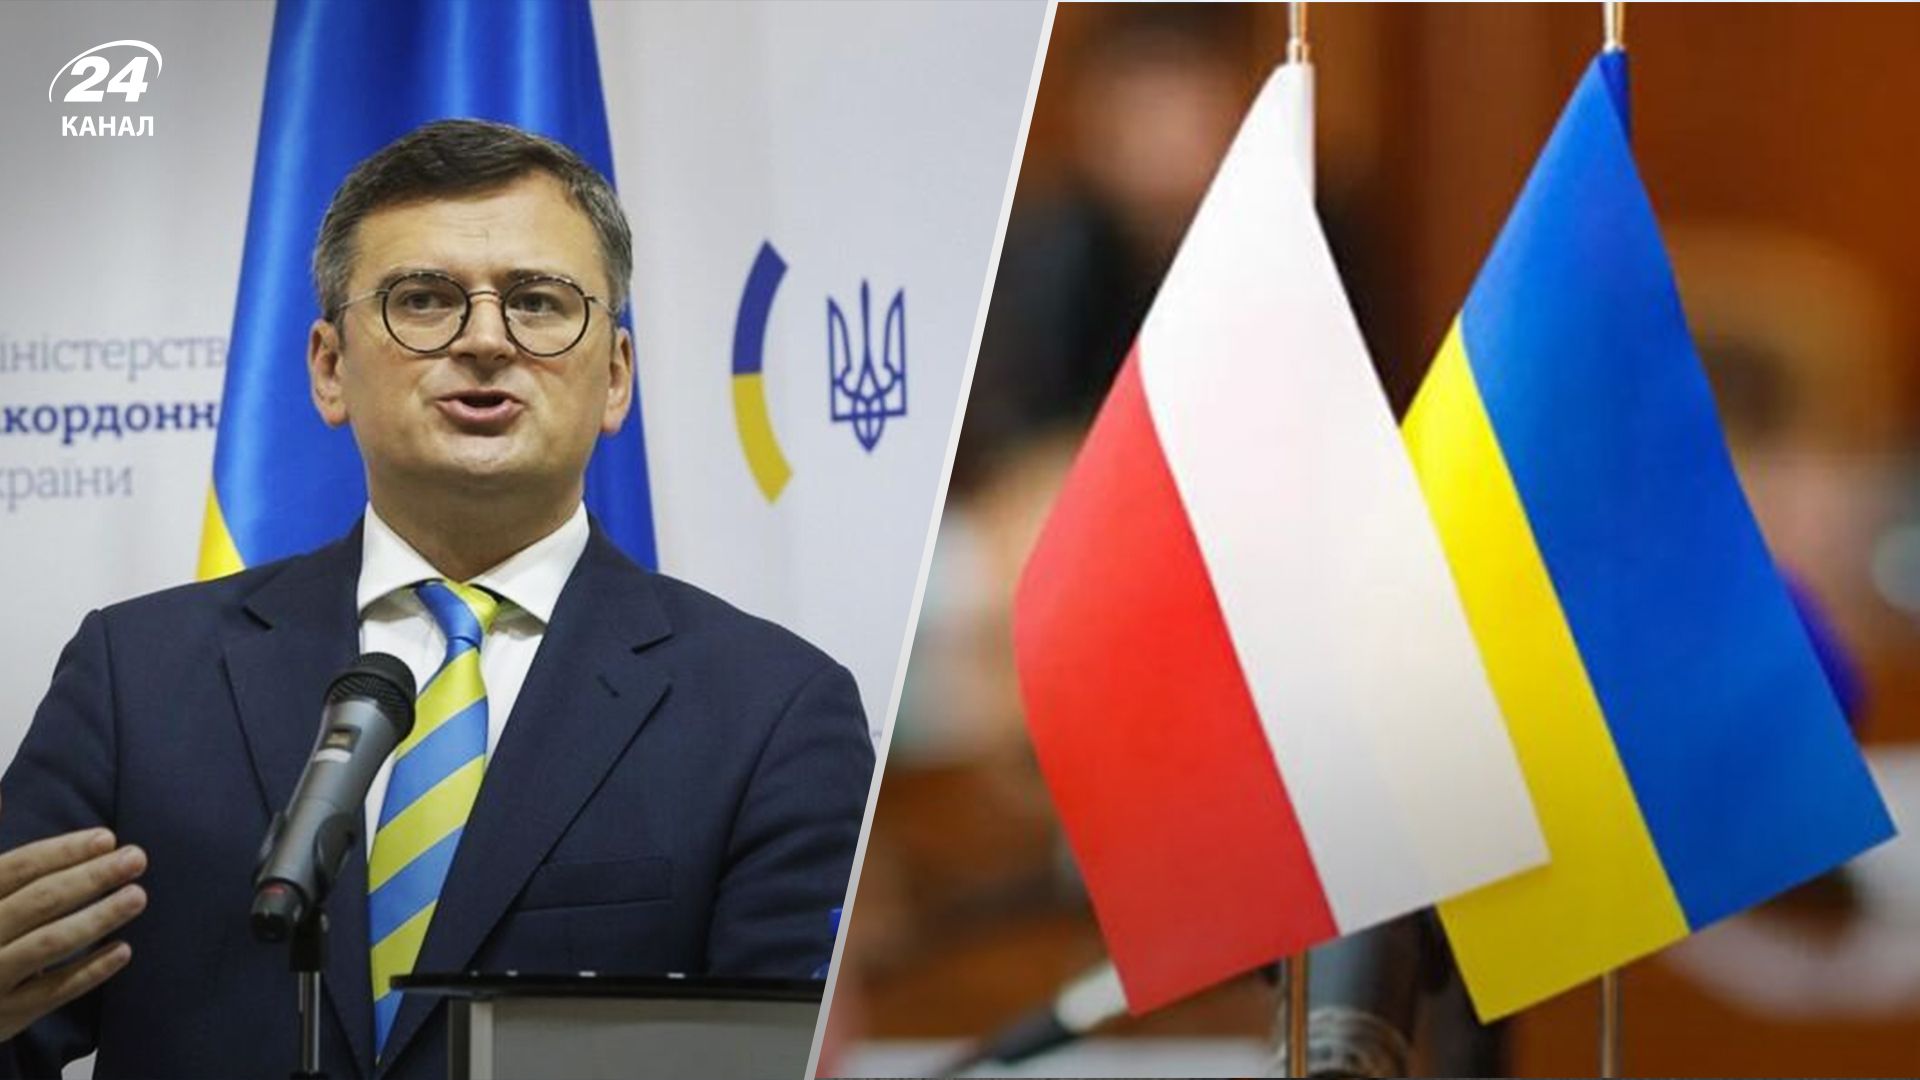 Парламентські вибори у Польщі - Кулеба пояснив, як вплинуть на відносини з Україною - 24 Кана